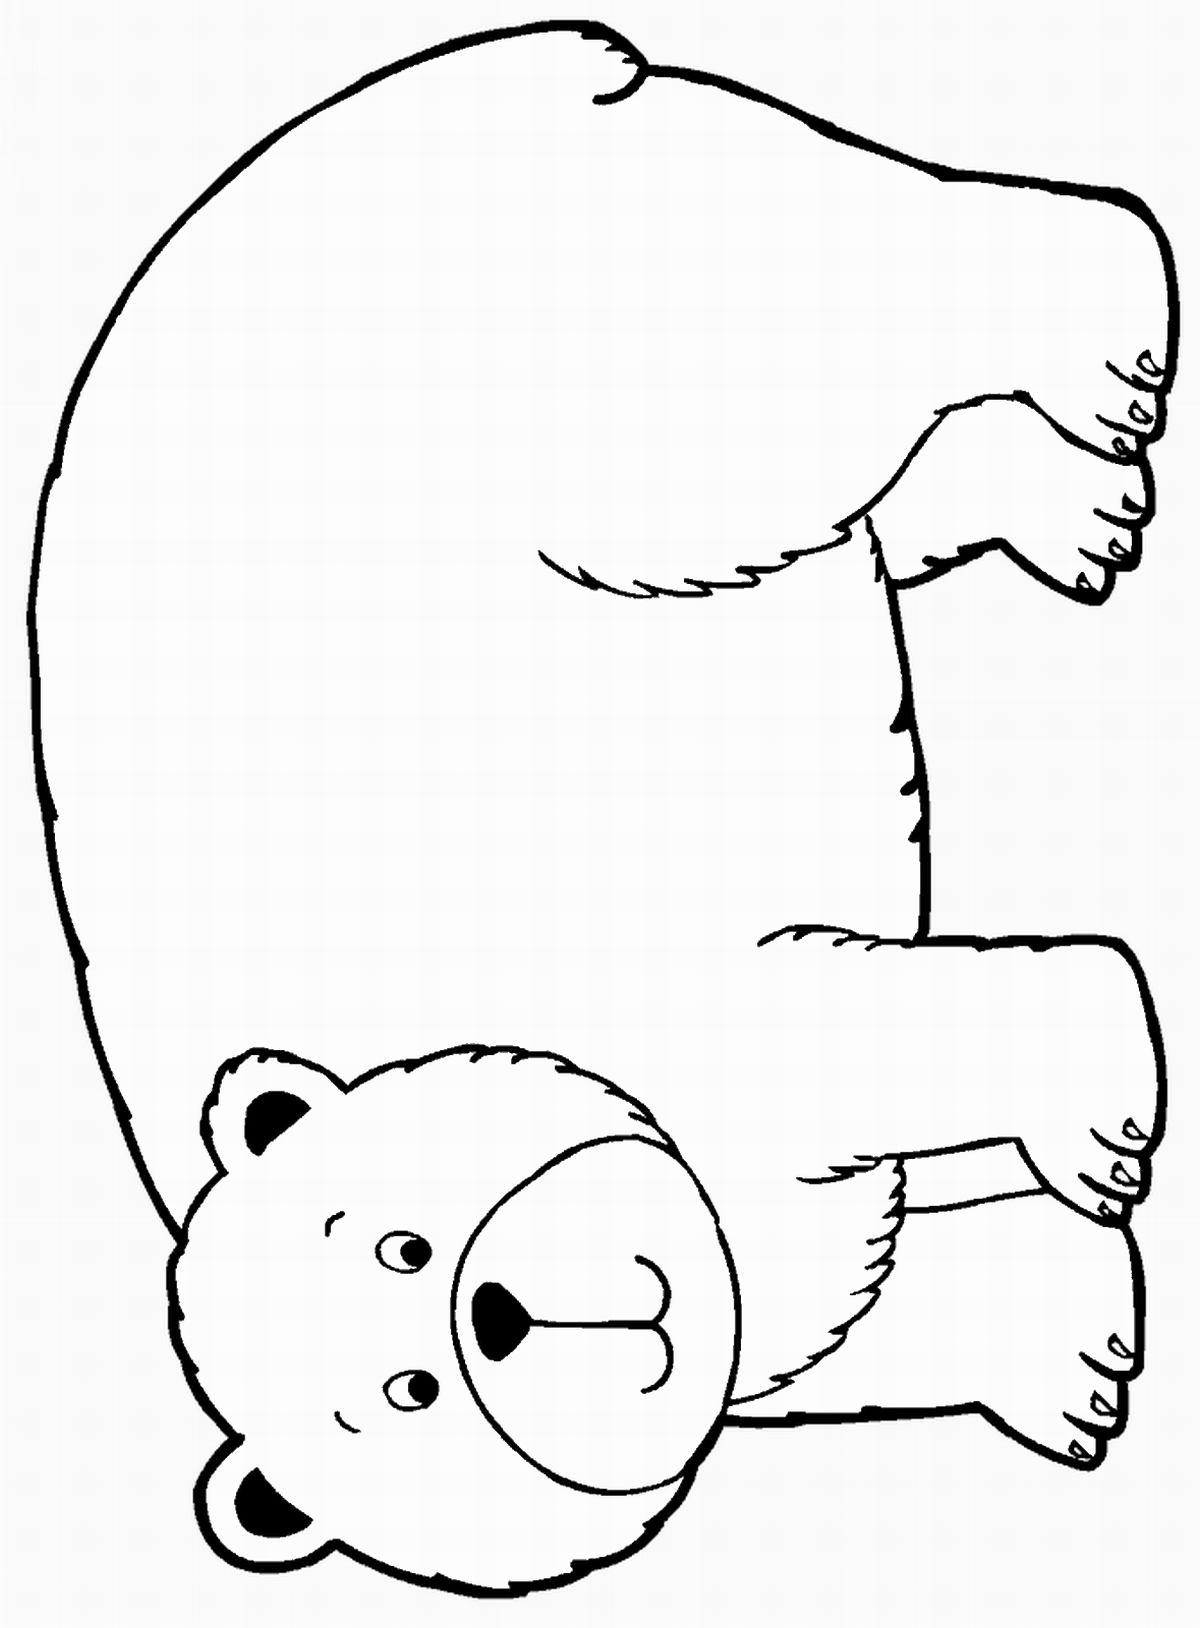 Распечатка медведя. Раскраска. Медвежонок. Медведь раскраска. Медведь для раскрашивания детям. Раскраска "мишки".